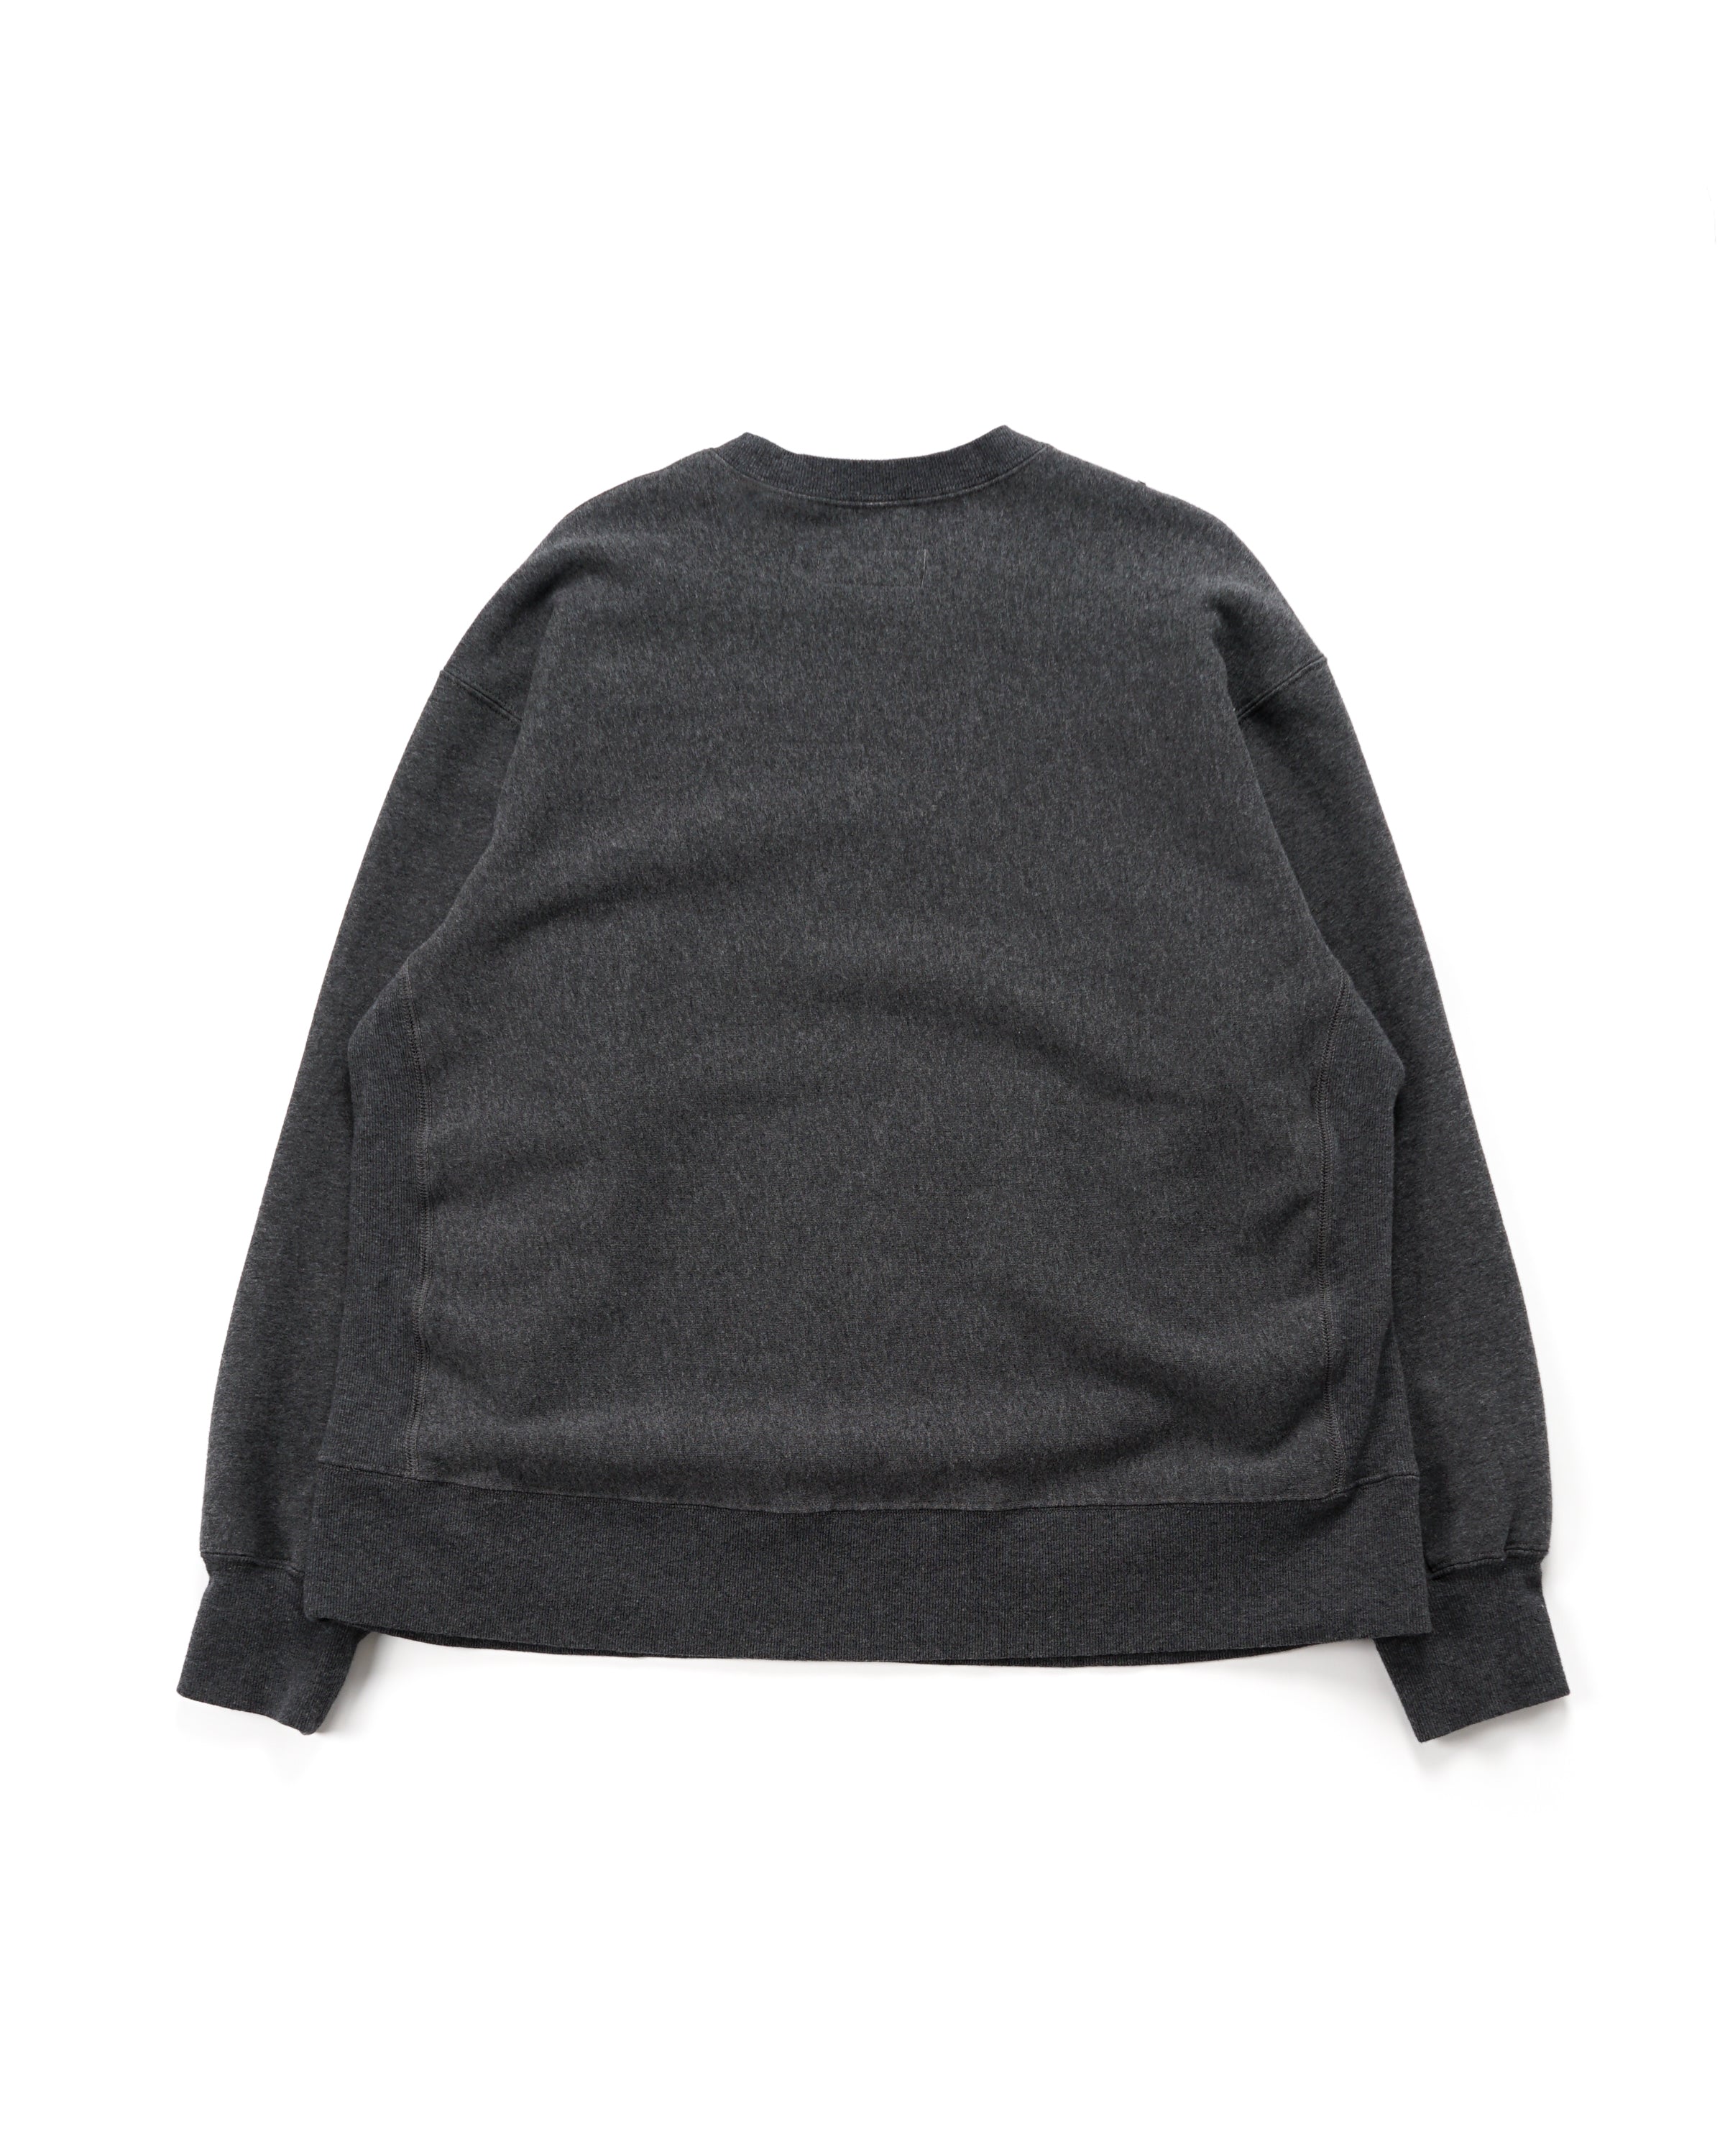 Utility Sweat Shirt - Charcoal 9oz CP Fleece